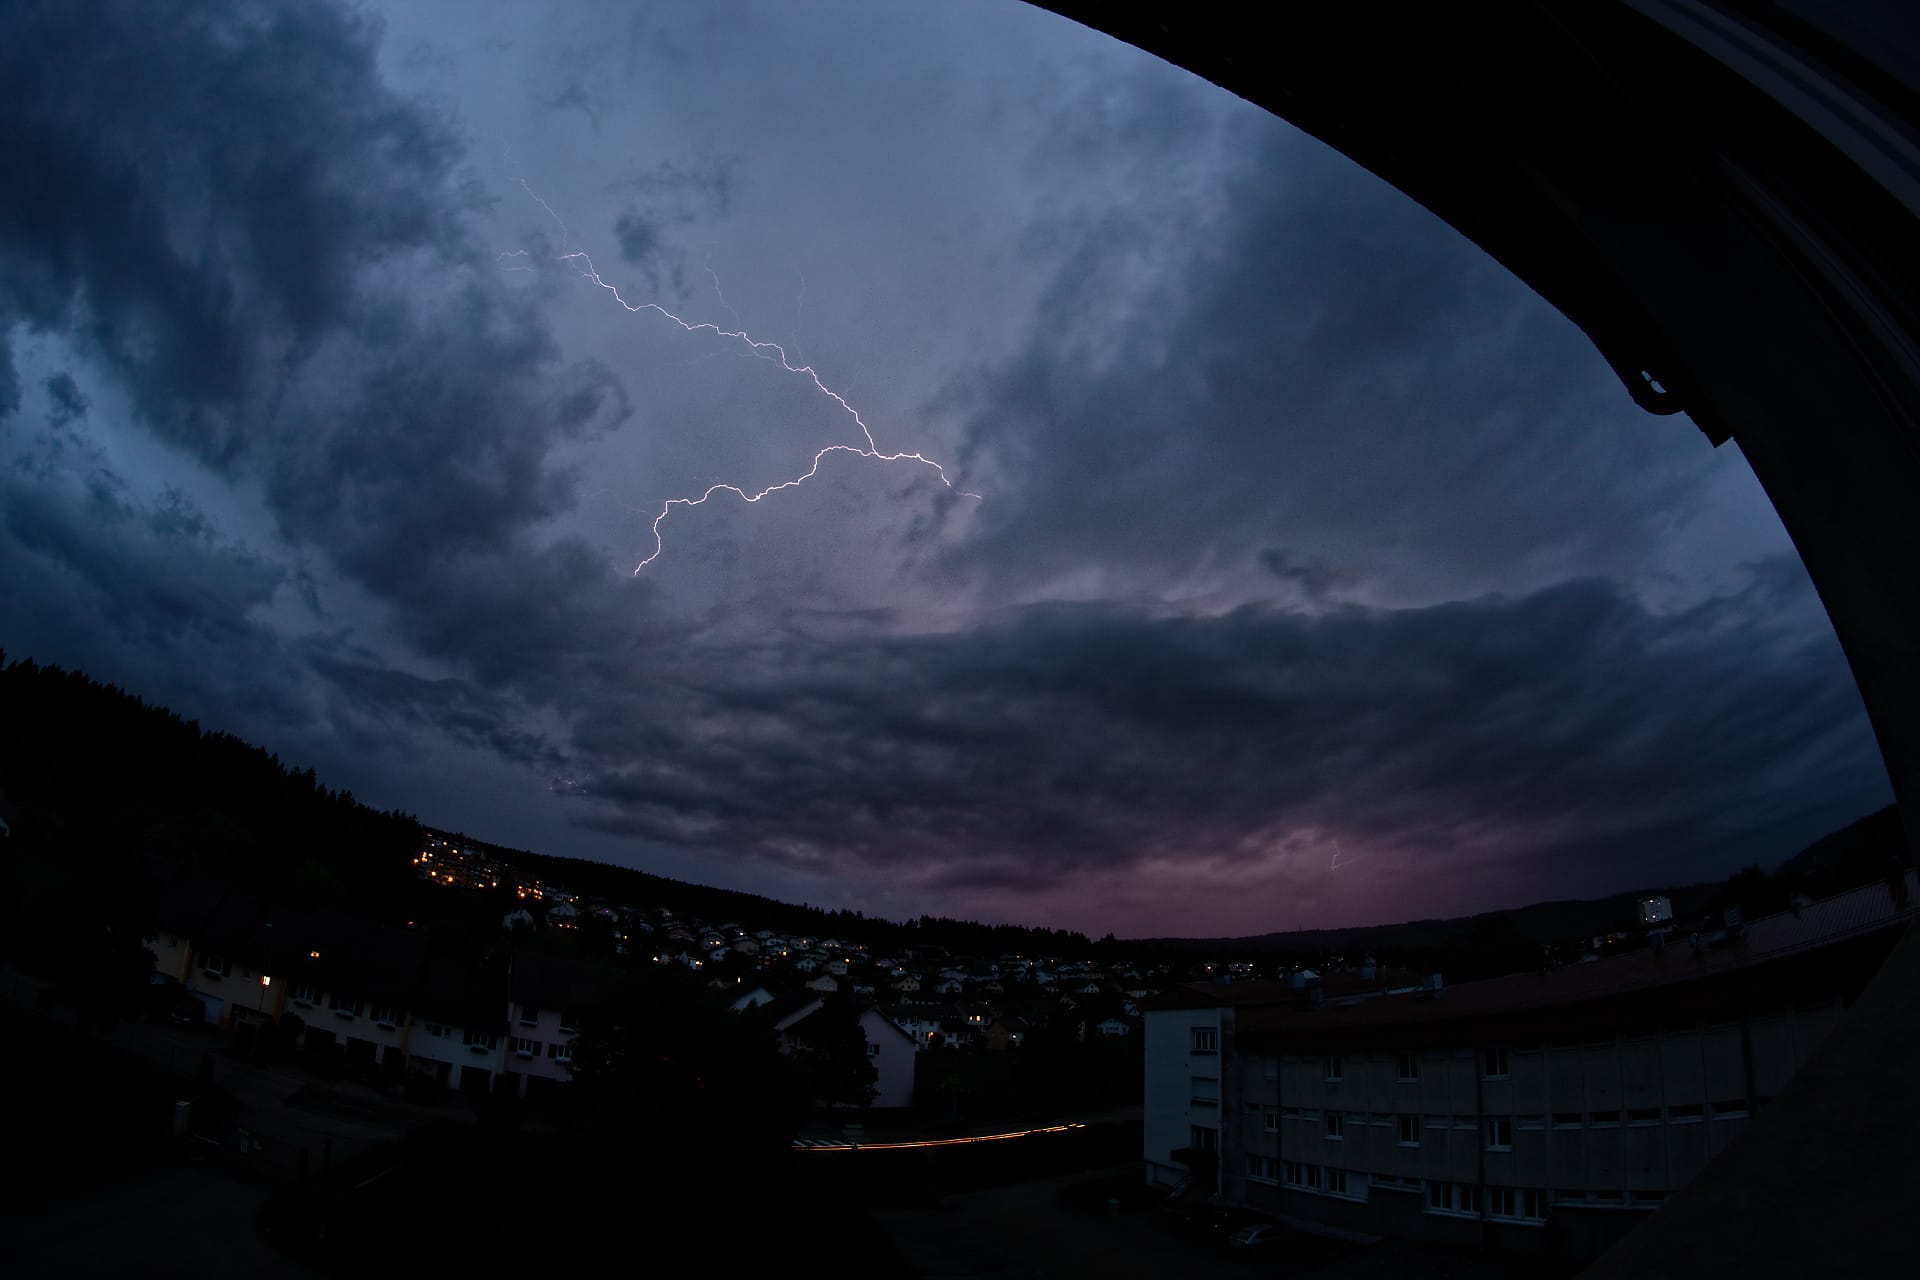 Un orage très électrique s'est déclaré un peu au sud de Pontarlier vers 21h. Beaucoup d'éclair intra-nuageux, mais aussi de beaux extra-nuageux. - 27/05/2018 21:26 - Rossetto Nicolas